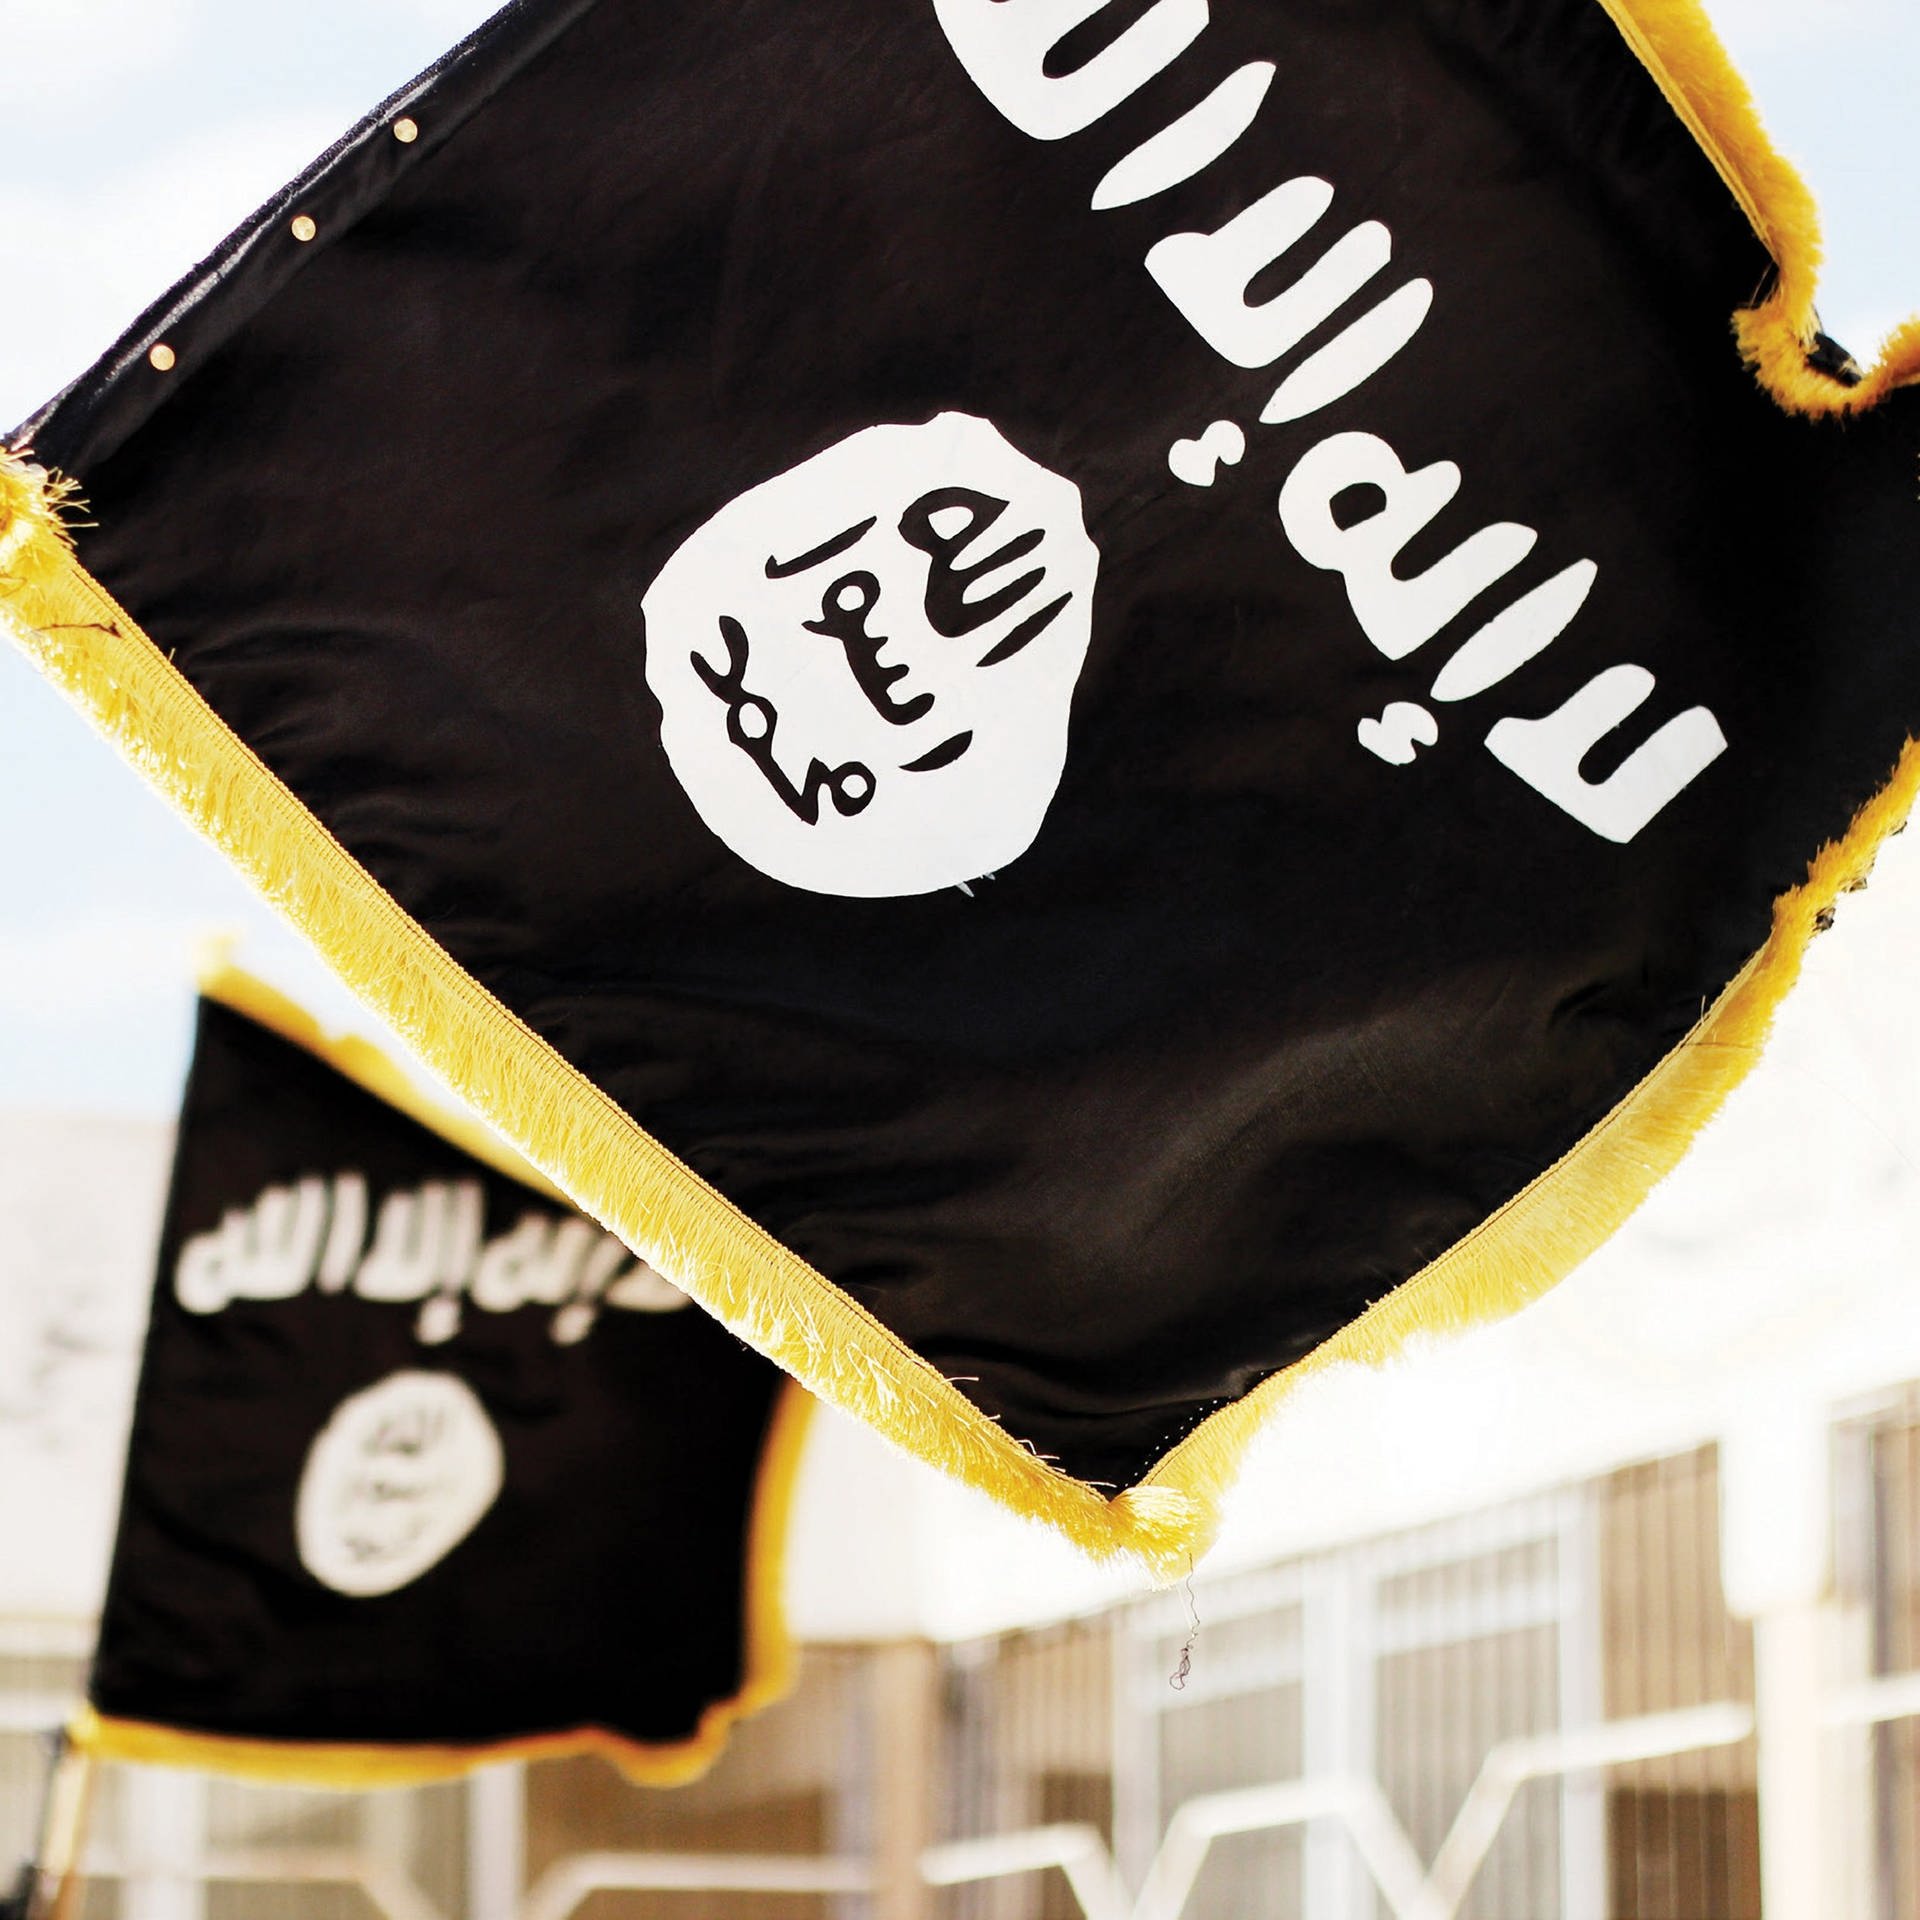 Die Wiederkehr des Terrors – Gibt es einen neuen IS?